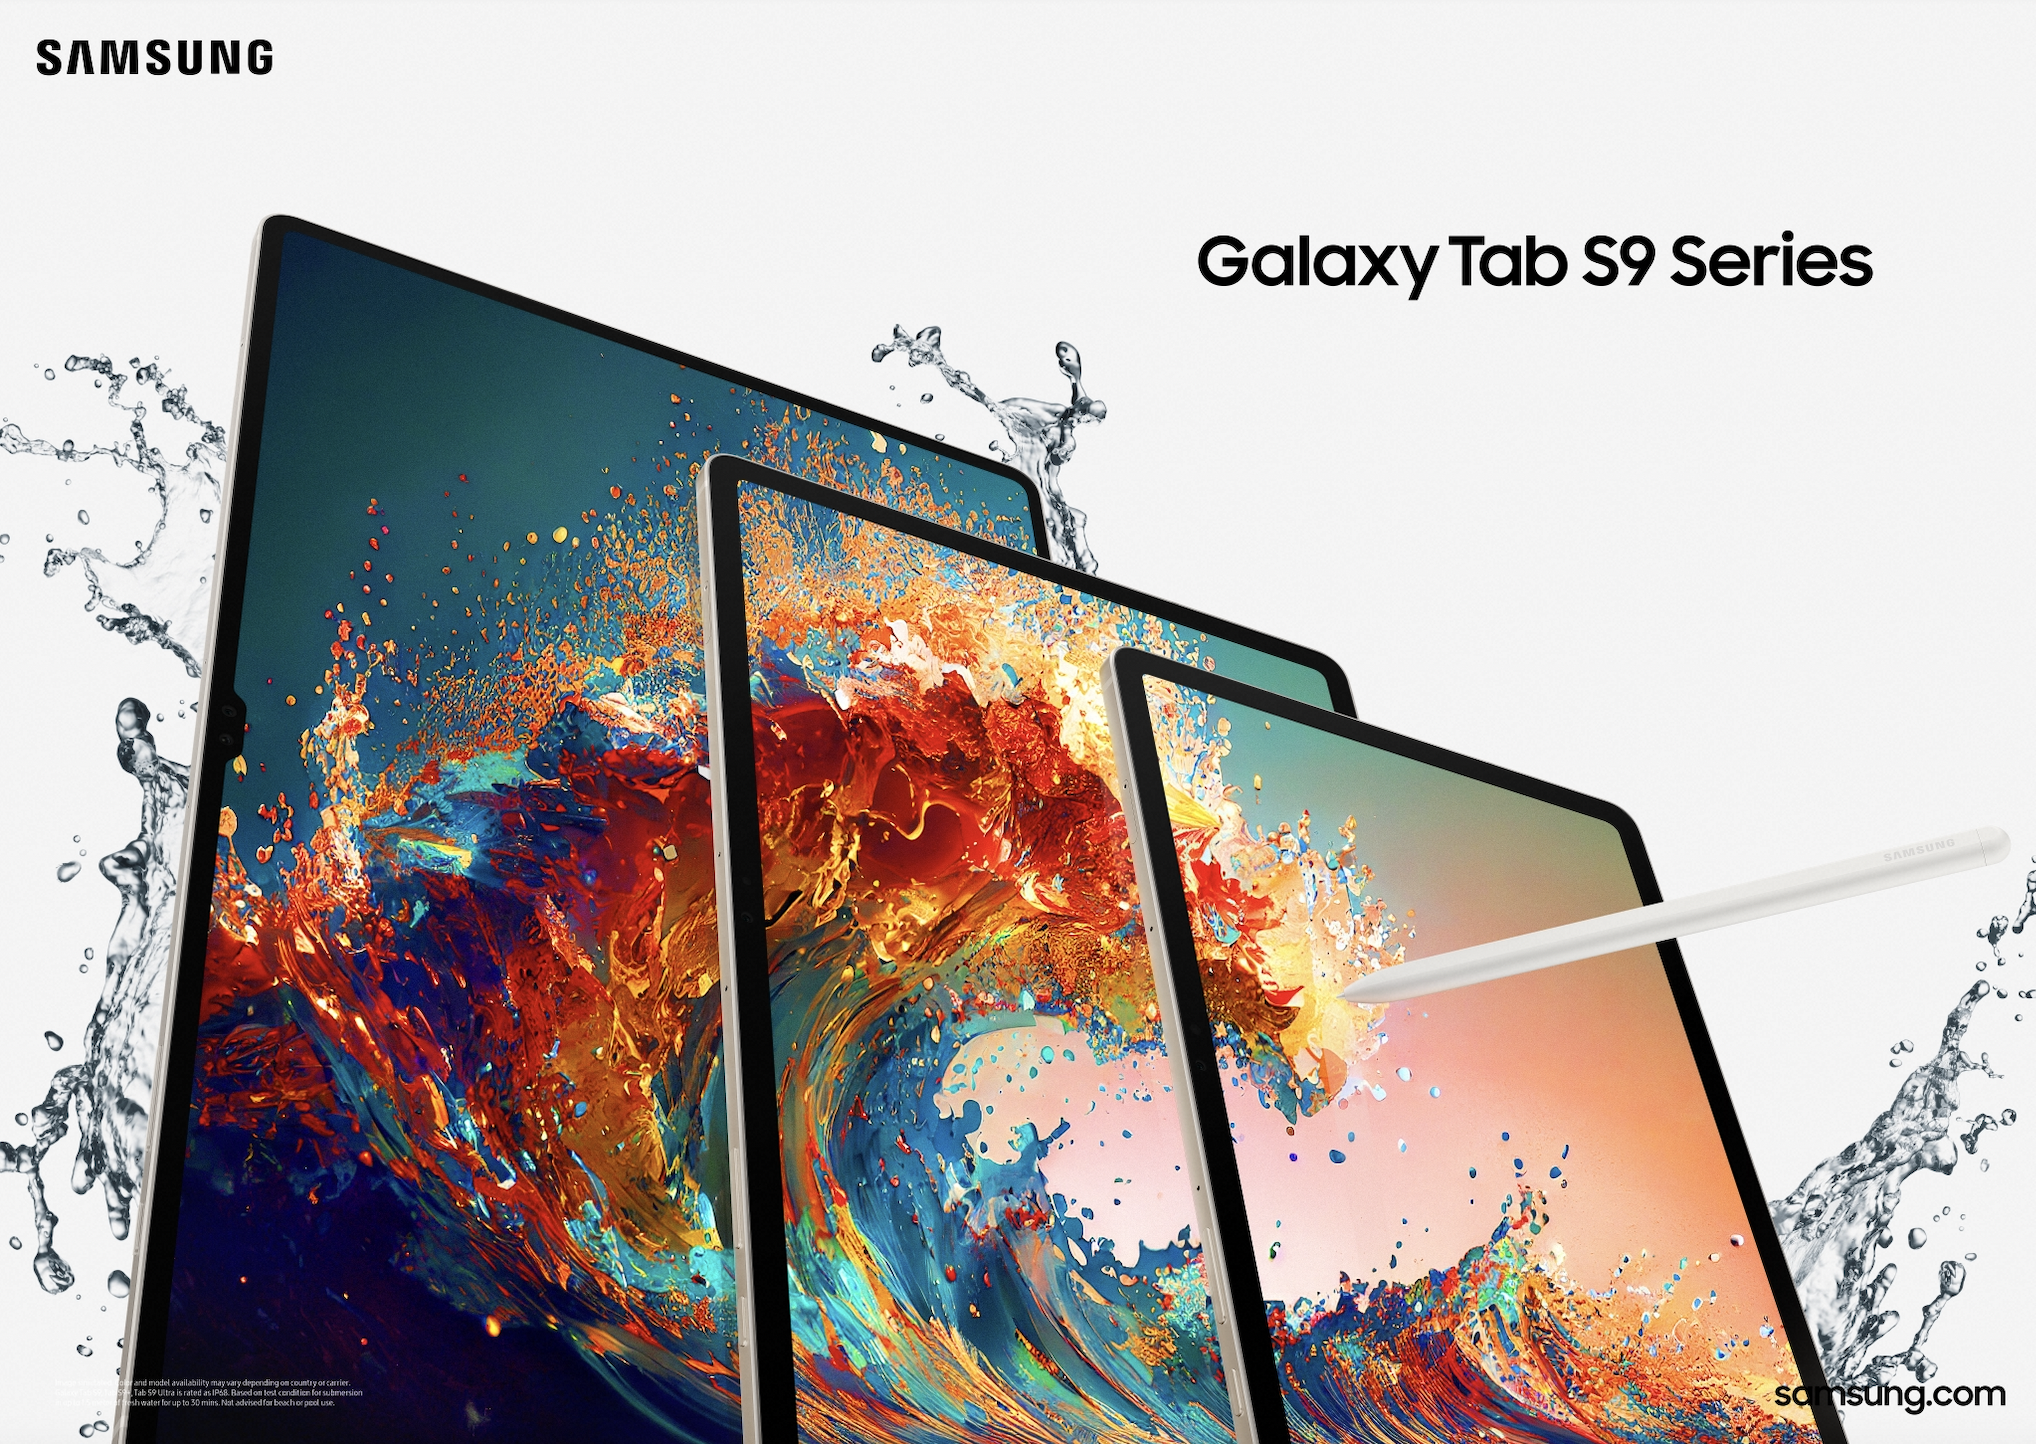 الجهاز اللوحي Galaxy Tab S9 من سامسونج يرسي معياراً جديداً لتوفير تجربة Galaxy المتميزة على الأجهزة اللوحية